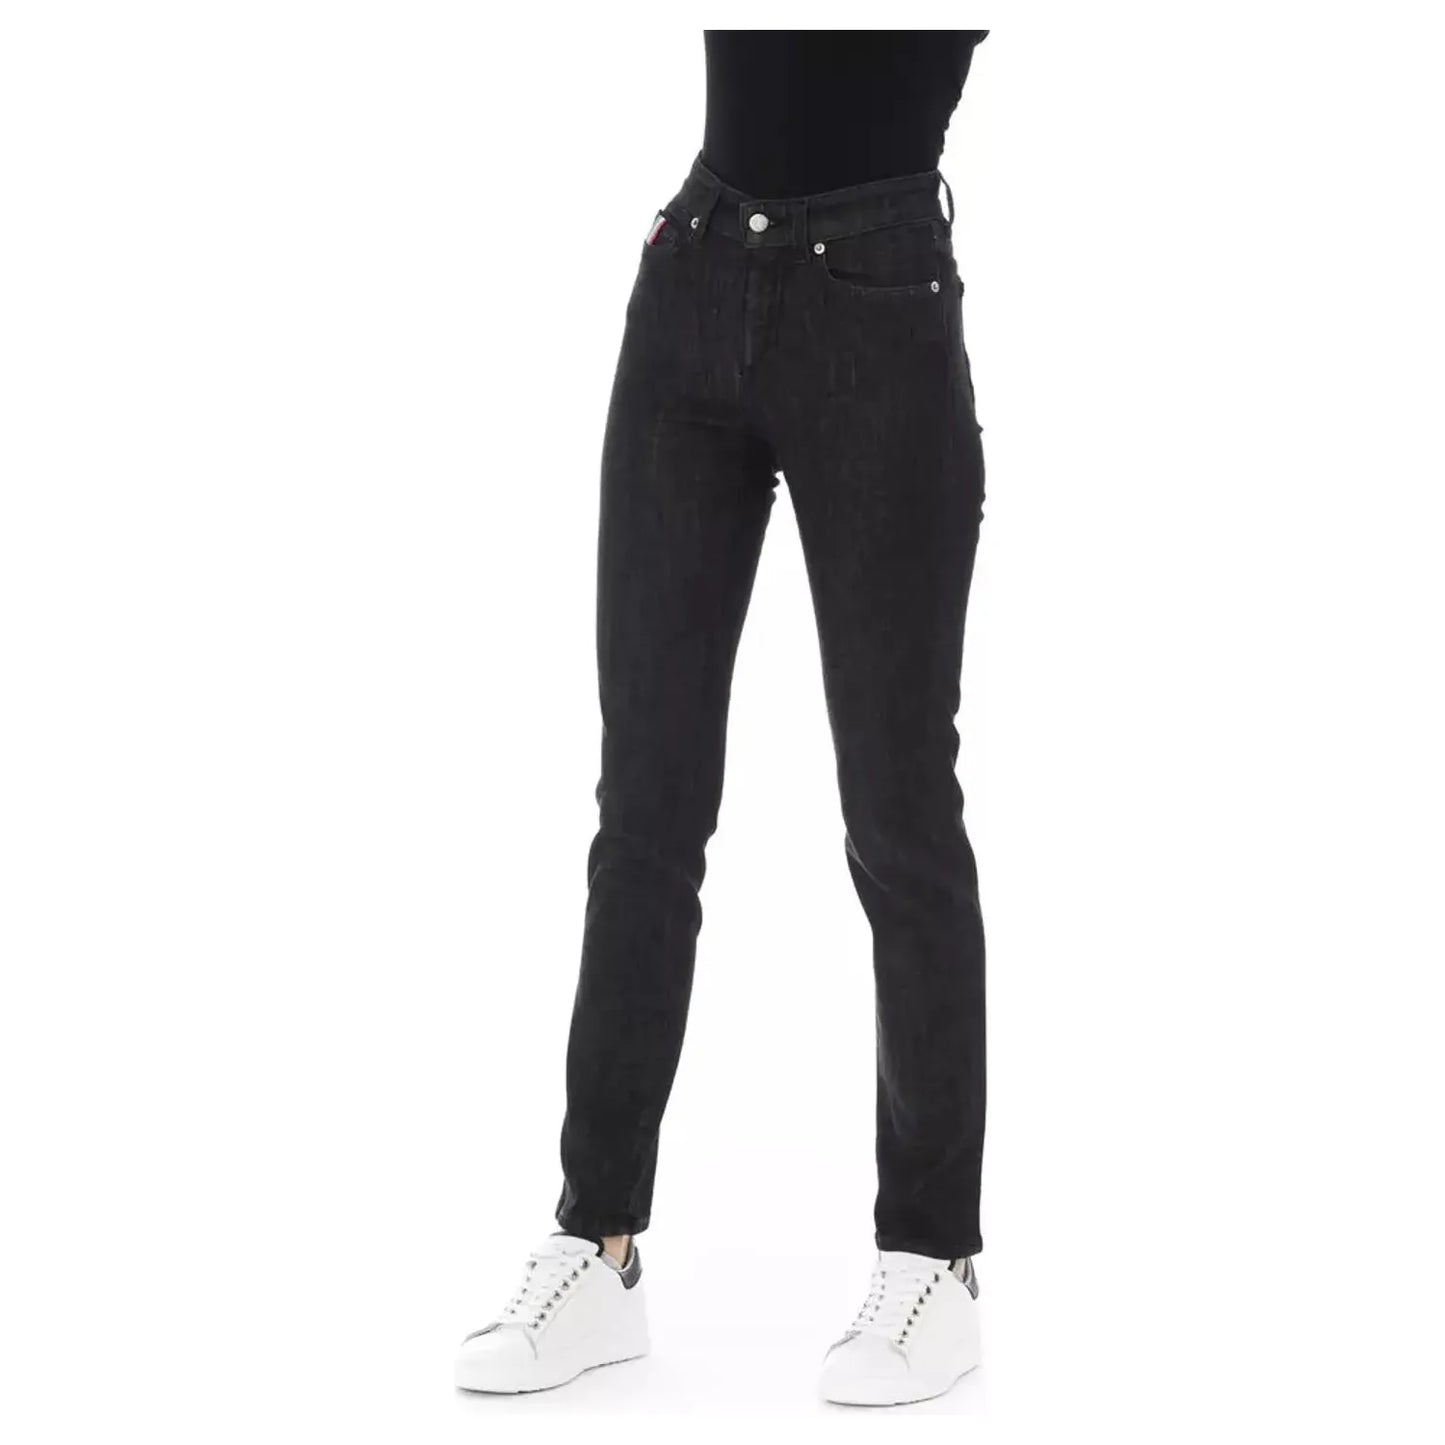 Baldinini Trend Chic Tricolor Accent Black Jeans black-cotton-jeans-pant-19